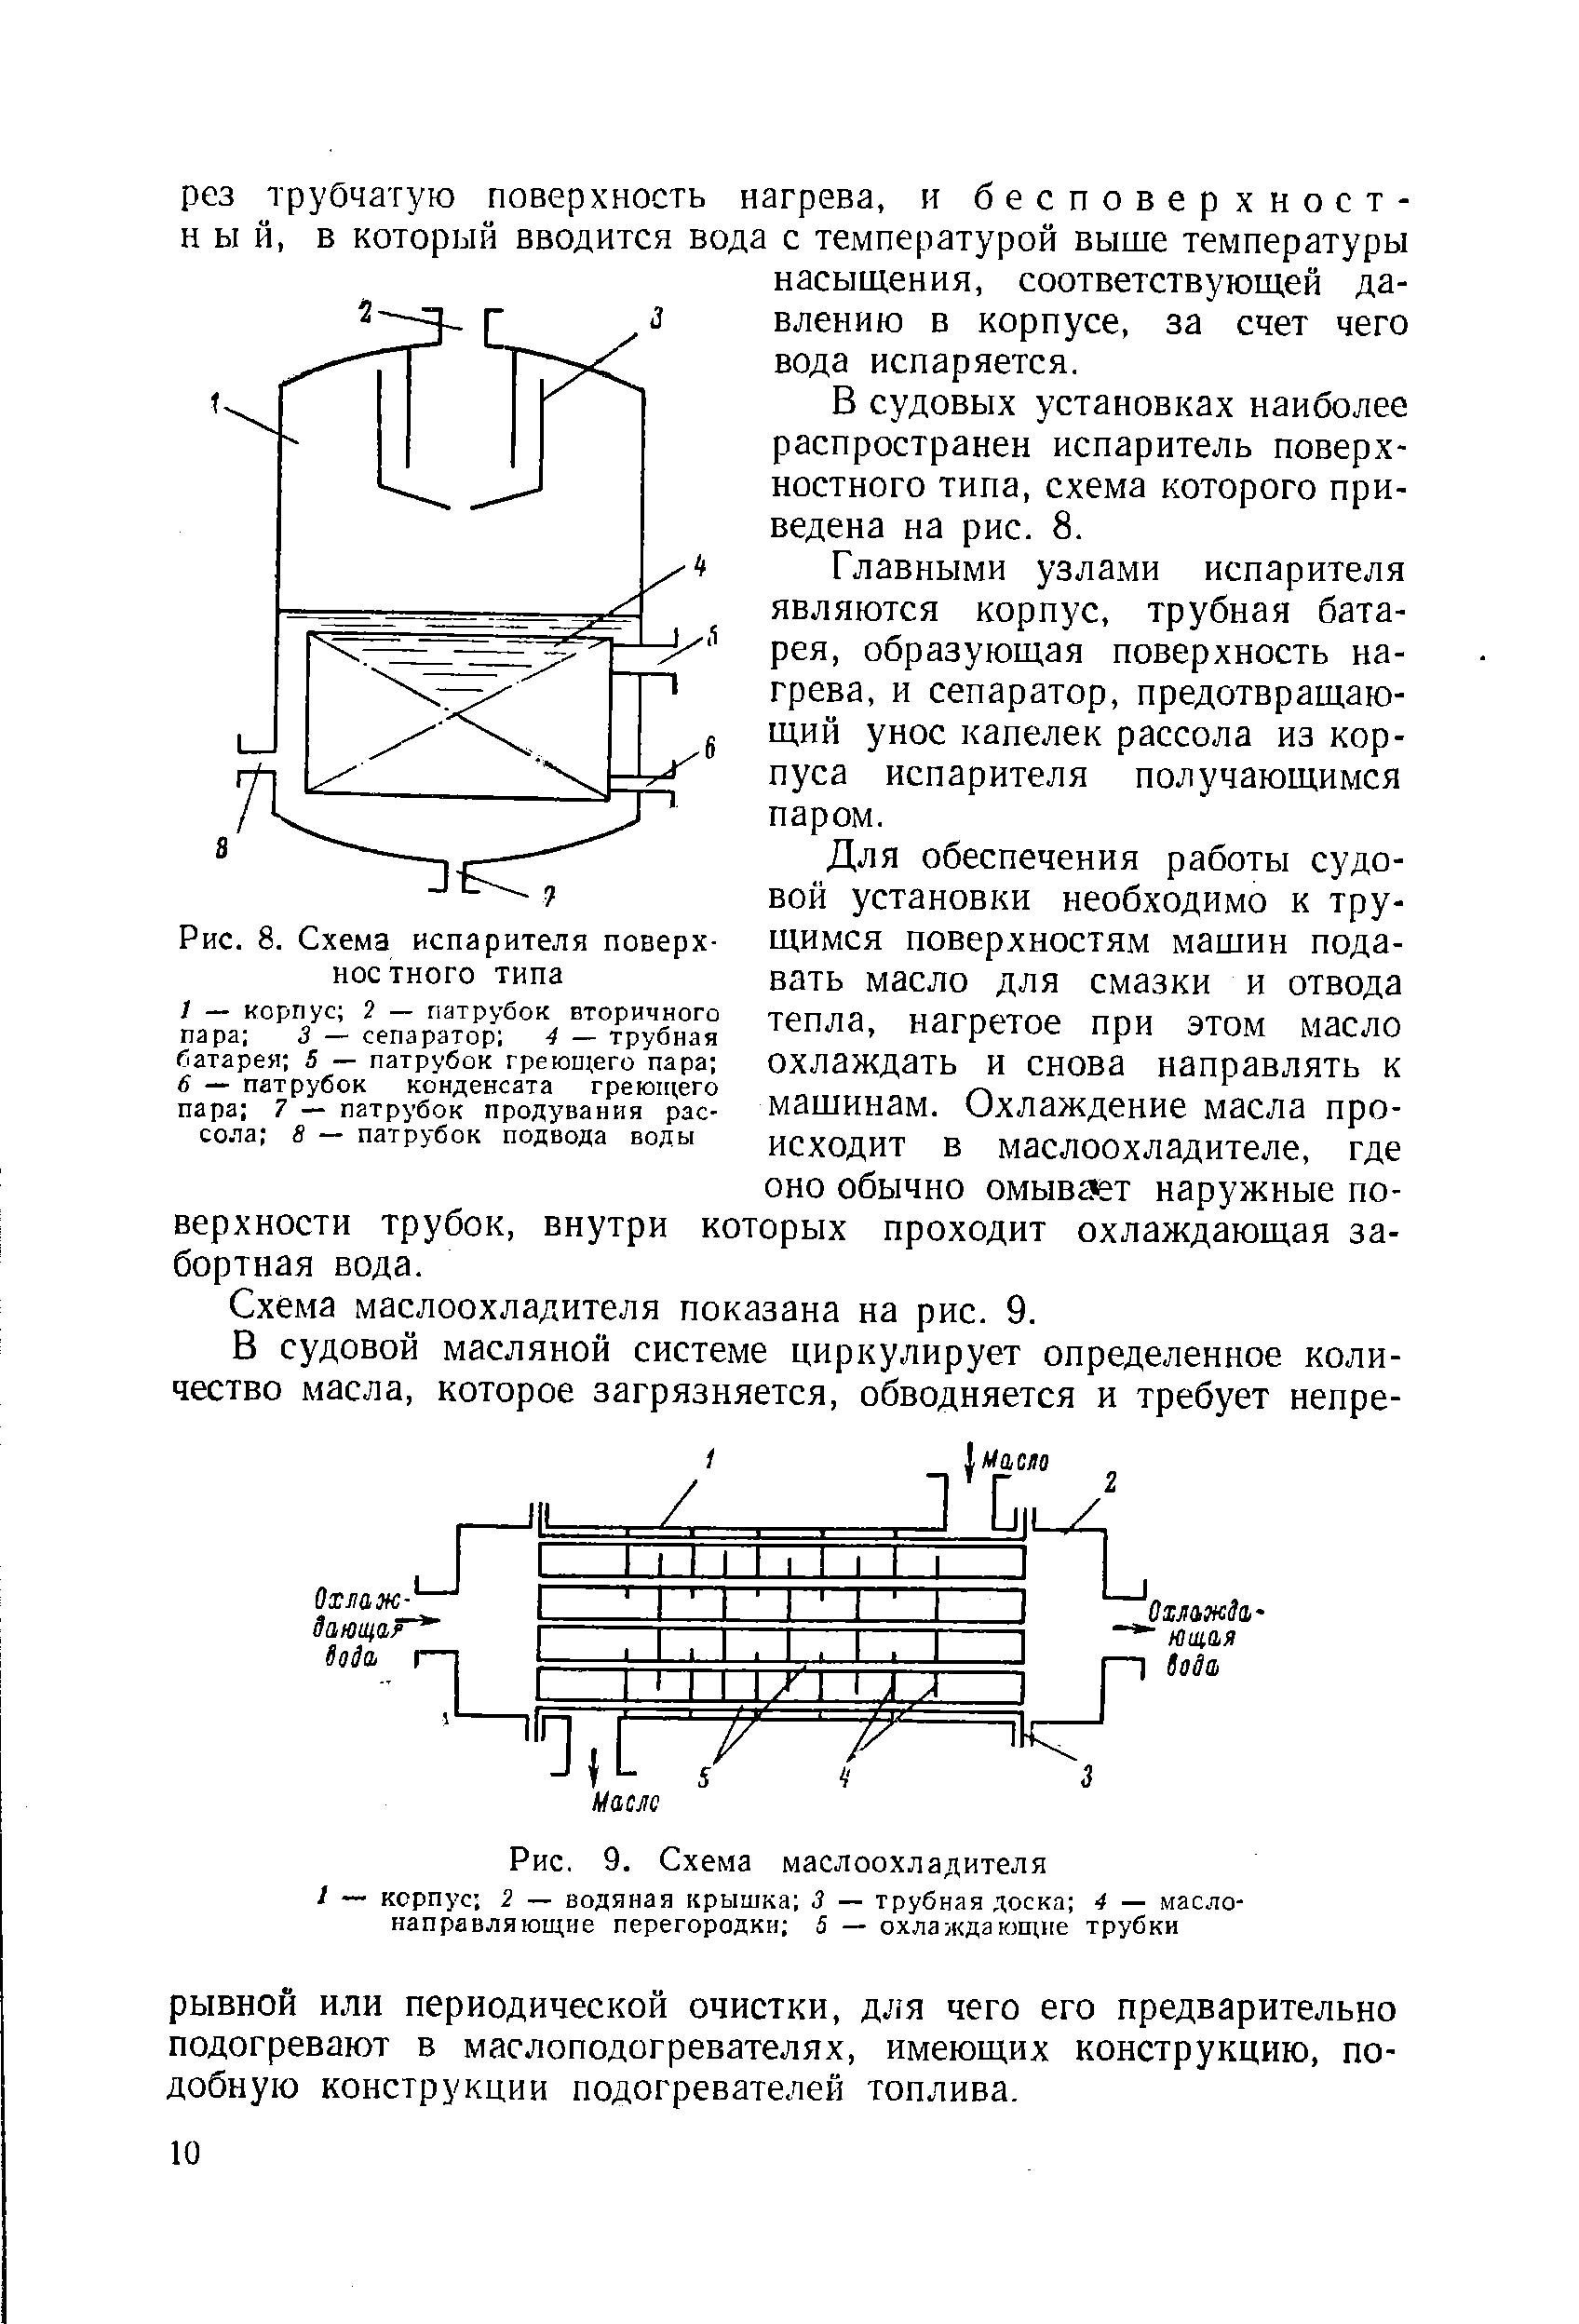 Рис. 8. Схема испарителя поверхностного типа
